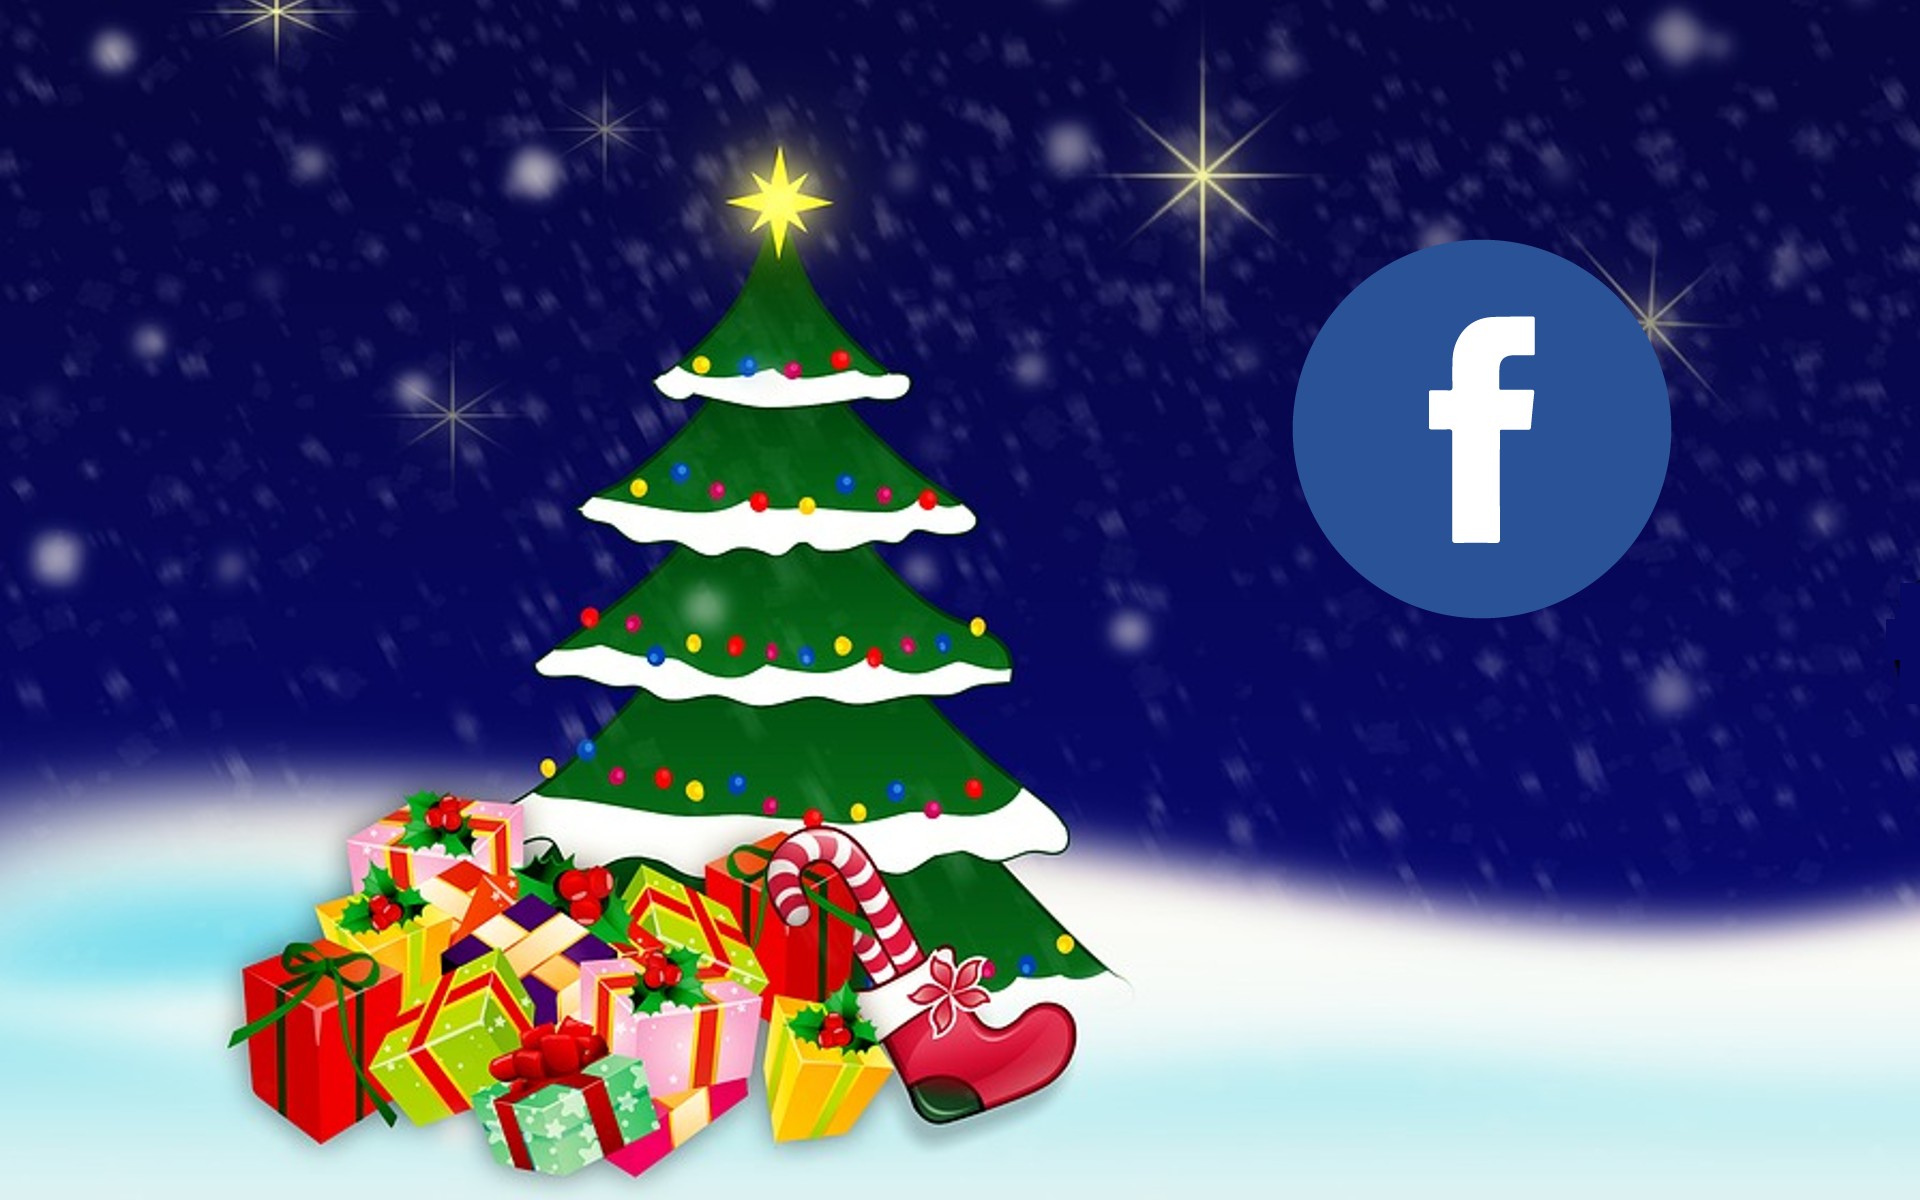 ▷ 43 mensajes navideños bonitos para felicitar la Navidad en Facebook